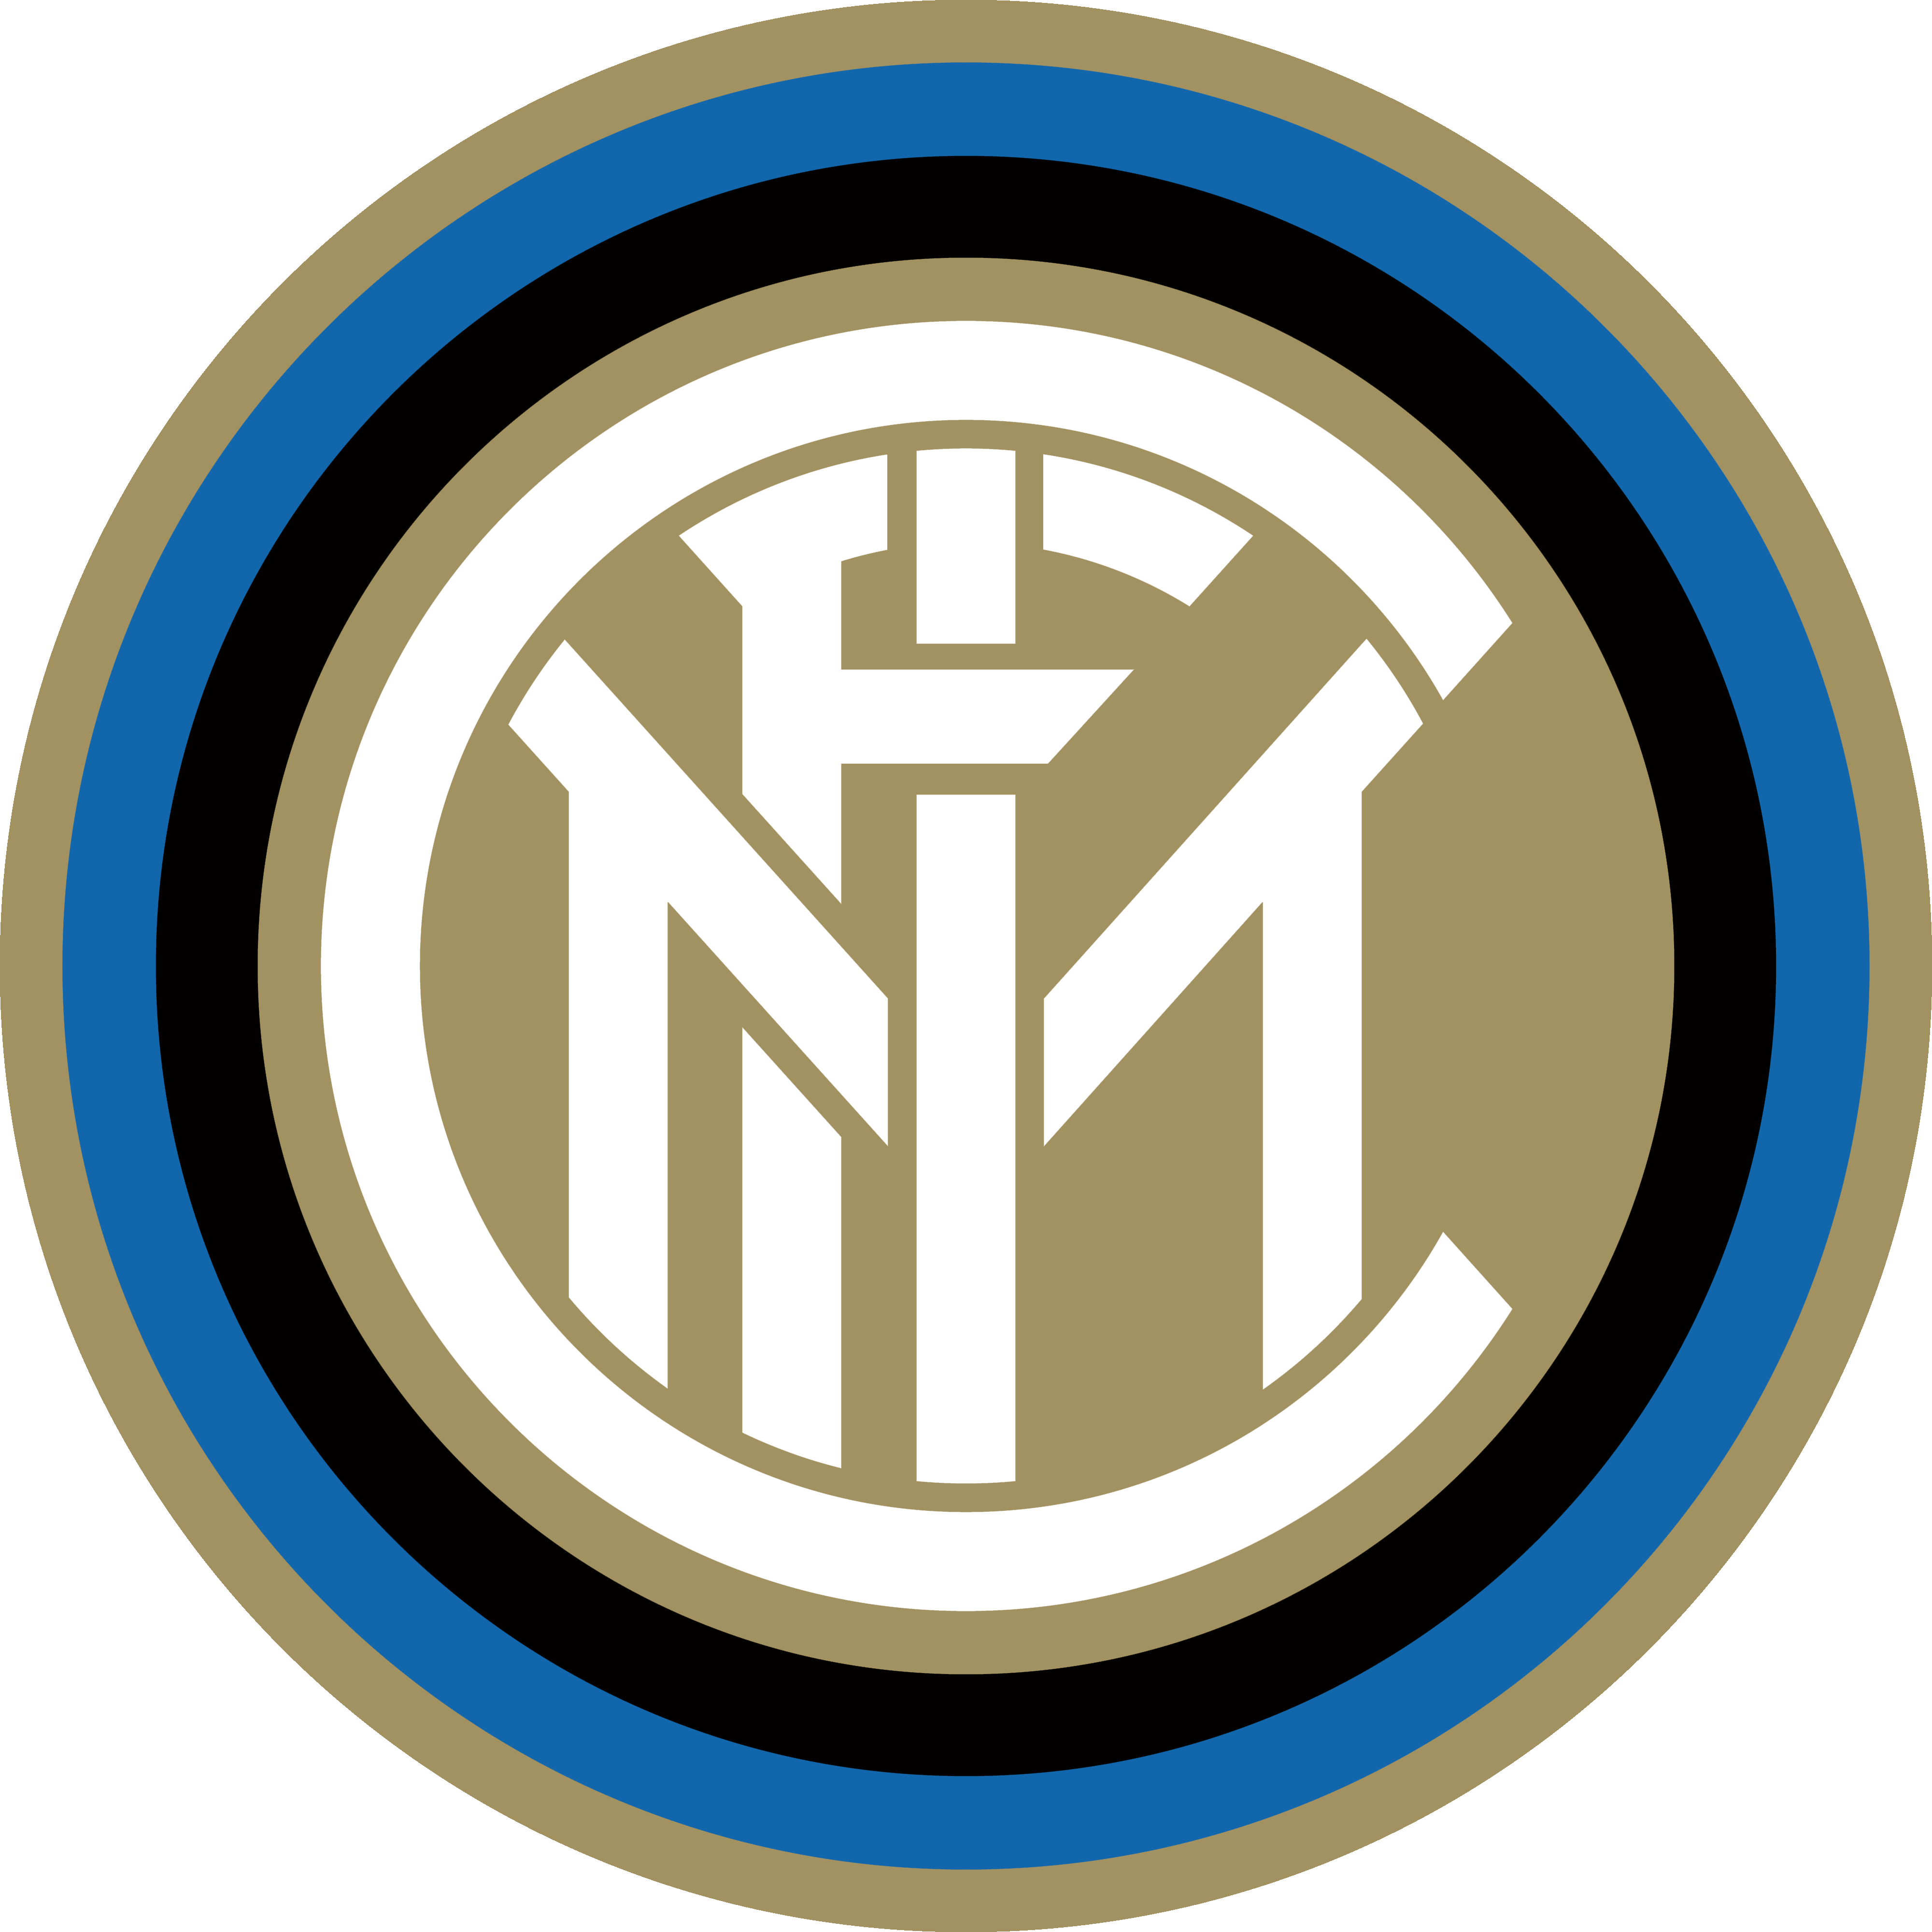 FC Inter – Logos Download